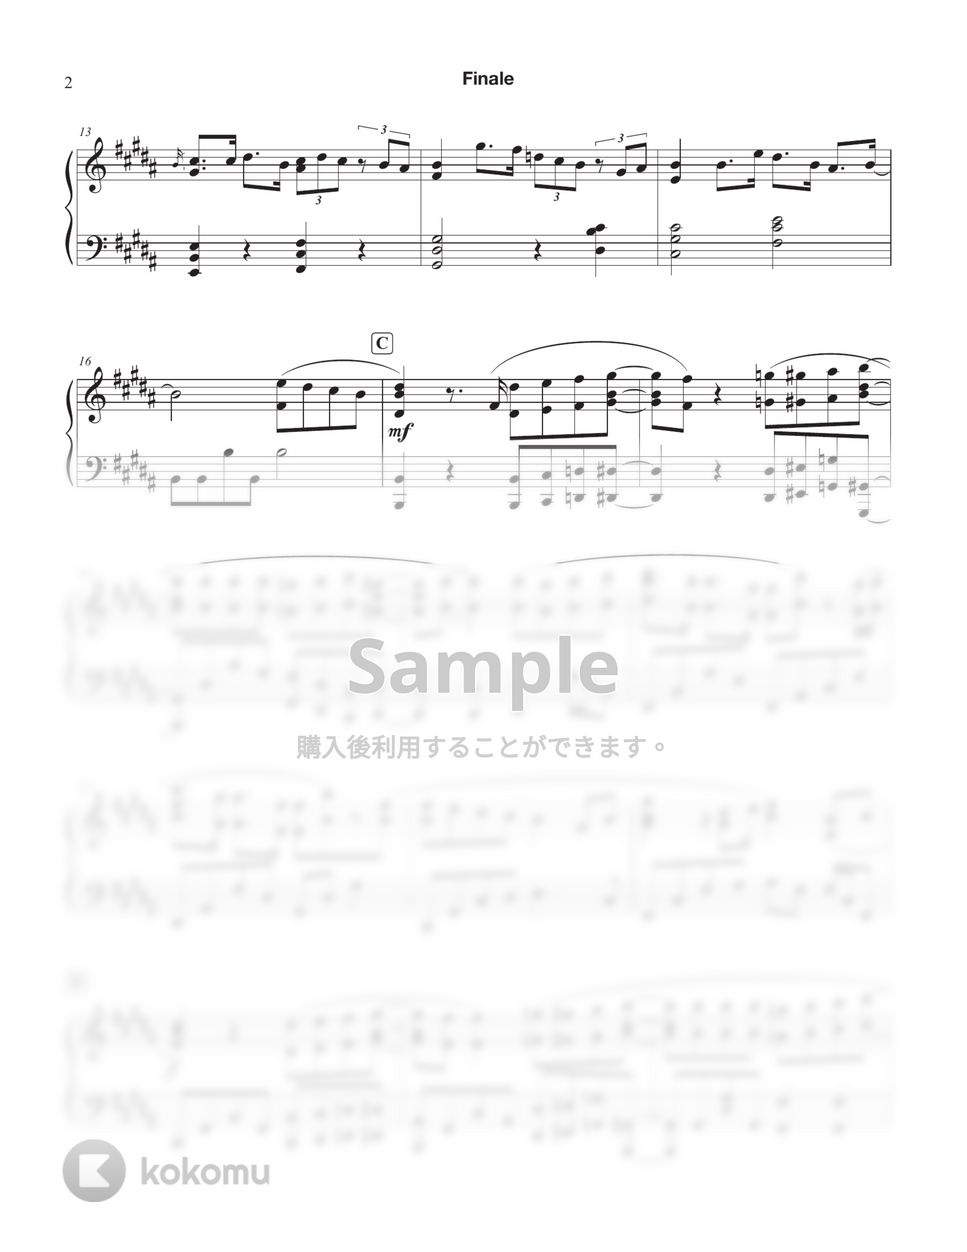 eill - フィナーレ (夏へのトンネル、さよならの出口 OST) (2 sheets) by Tully Piano